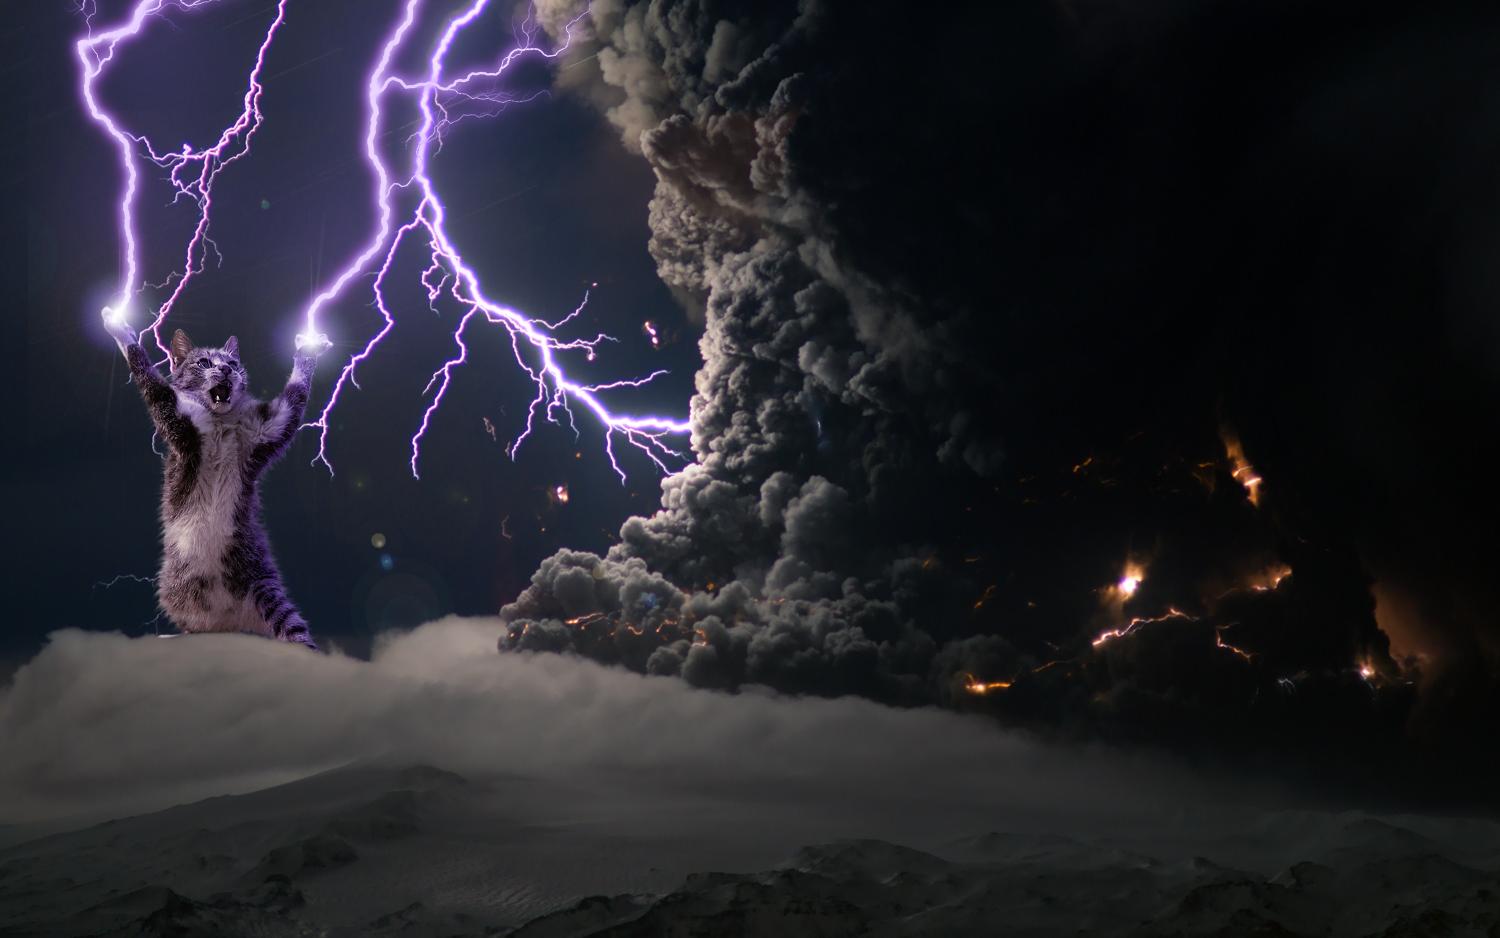 photoshopped cat lightning